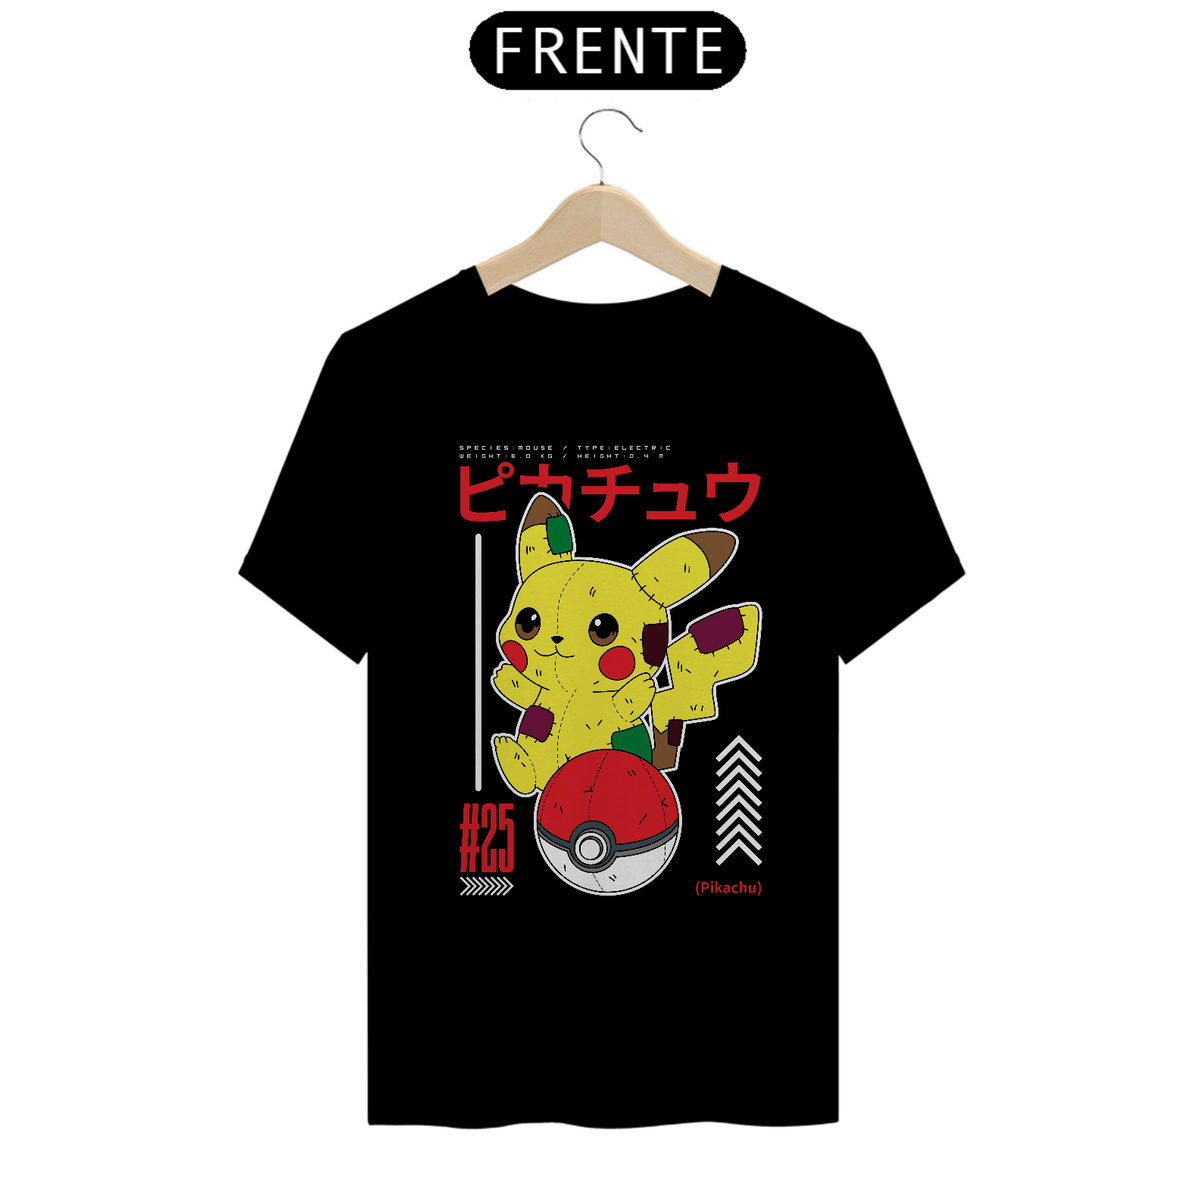 Nome do produto: Pikachu 1